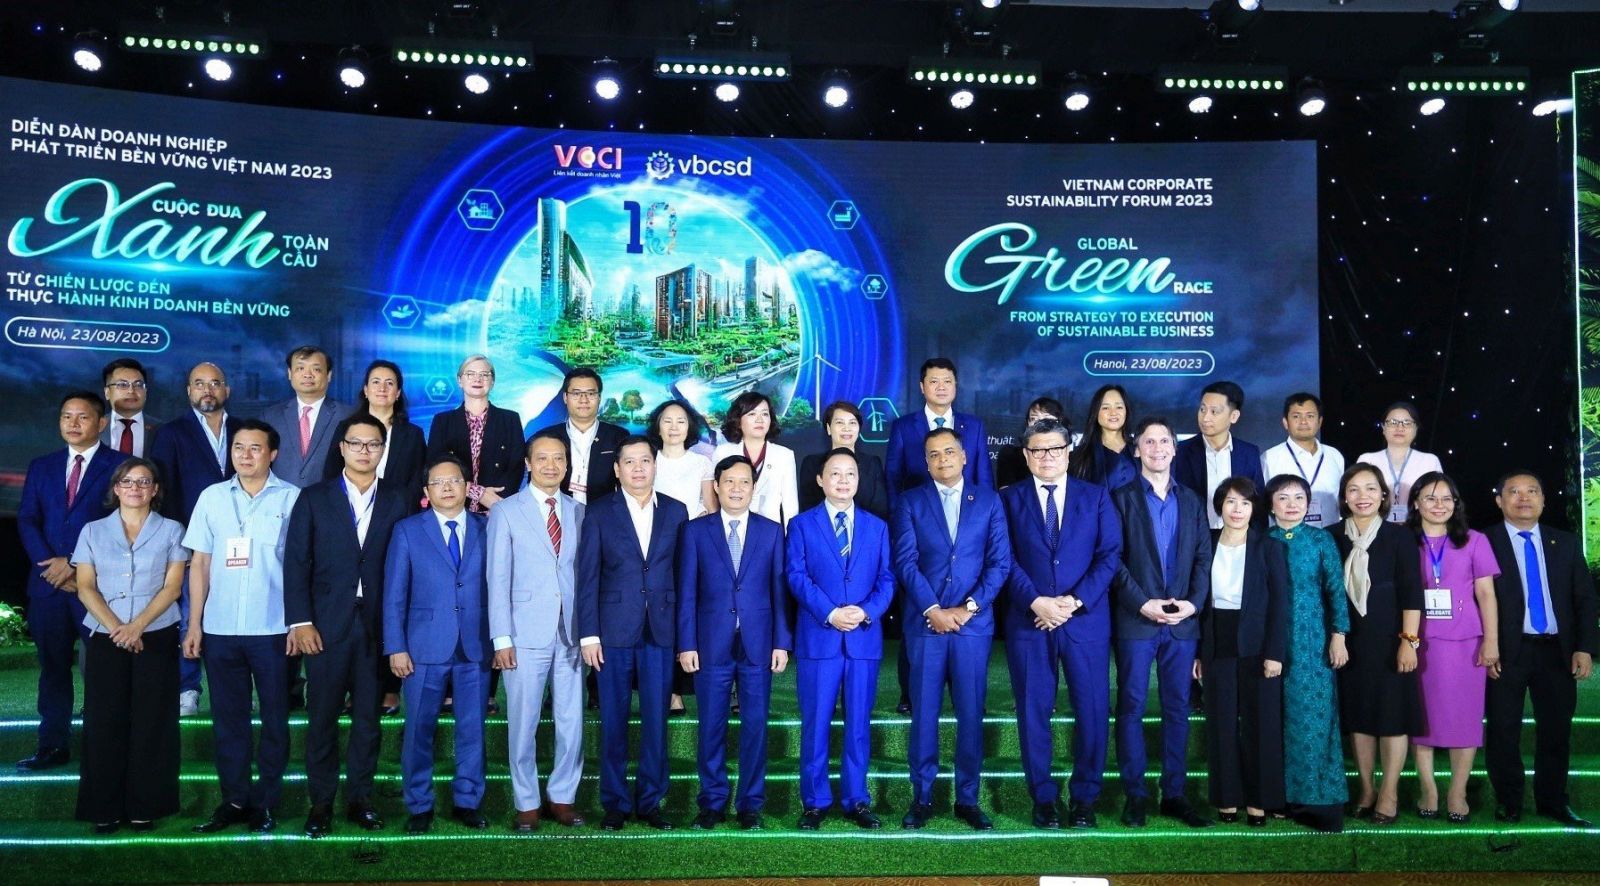 Phó Thủ tướng chụp ảnh lưu niệm với các đại biểu tham dự VCSF 2023.